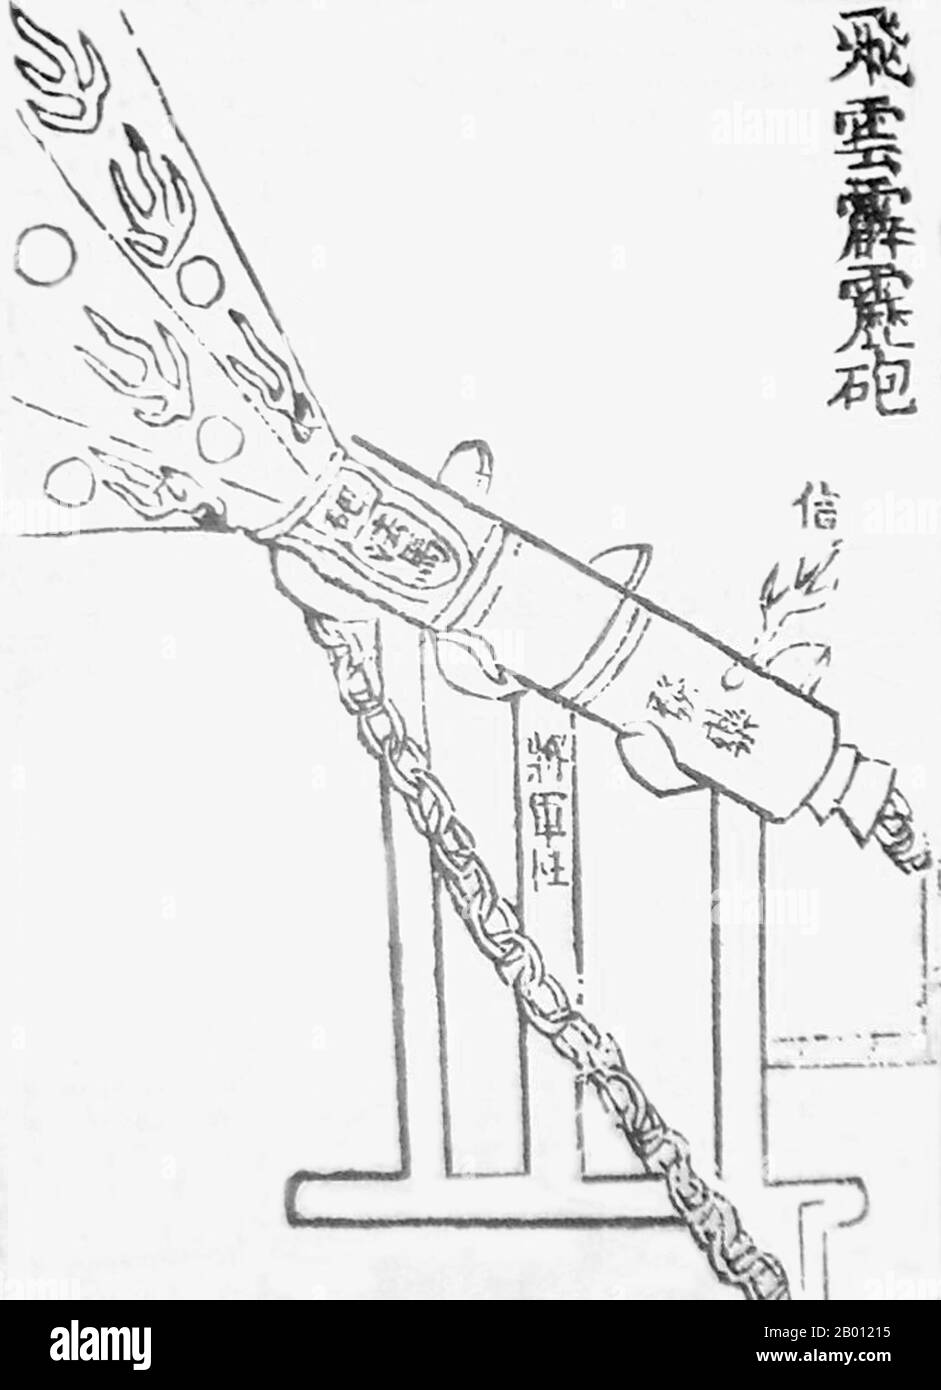 Chine : un canon chinois du XIVe siècle, l'« éruption d'un orage de nuages volants ». Illustration par Jiao Yu (XIVe siècle) et Liu Ji (1311-1375), XIVe siècle. Illustration du XIVe siècle d'un canon ou d'un érupteur chinois qui a tiré des proto-shells sous forme de bombes en fonte. Cette illustration a été présentée dans le traité militaire du XIVe siècle du Huolongjing, édité et compilé par Liu Ji et Jiao Yu, avec la préface ajoutée en 1412. Ce canon spécifique a été appelé 'l'éruption d'orage de nuages volants' (feiyun pilipao). Banque D'Images